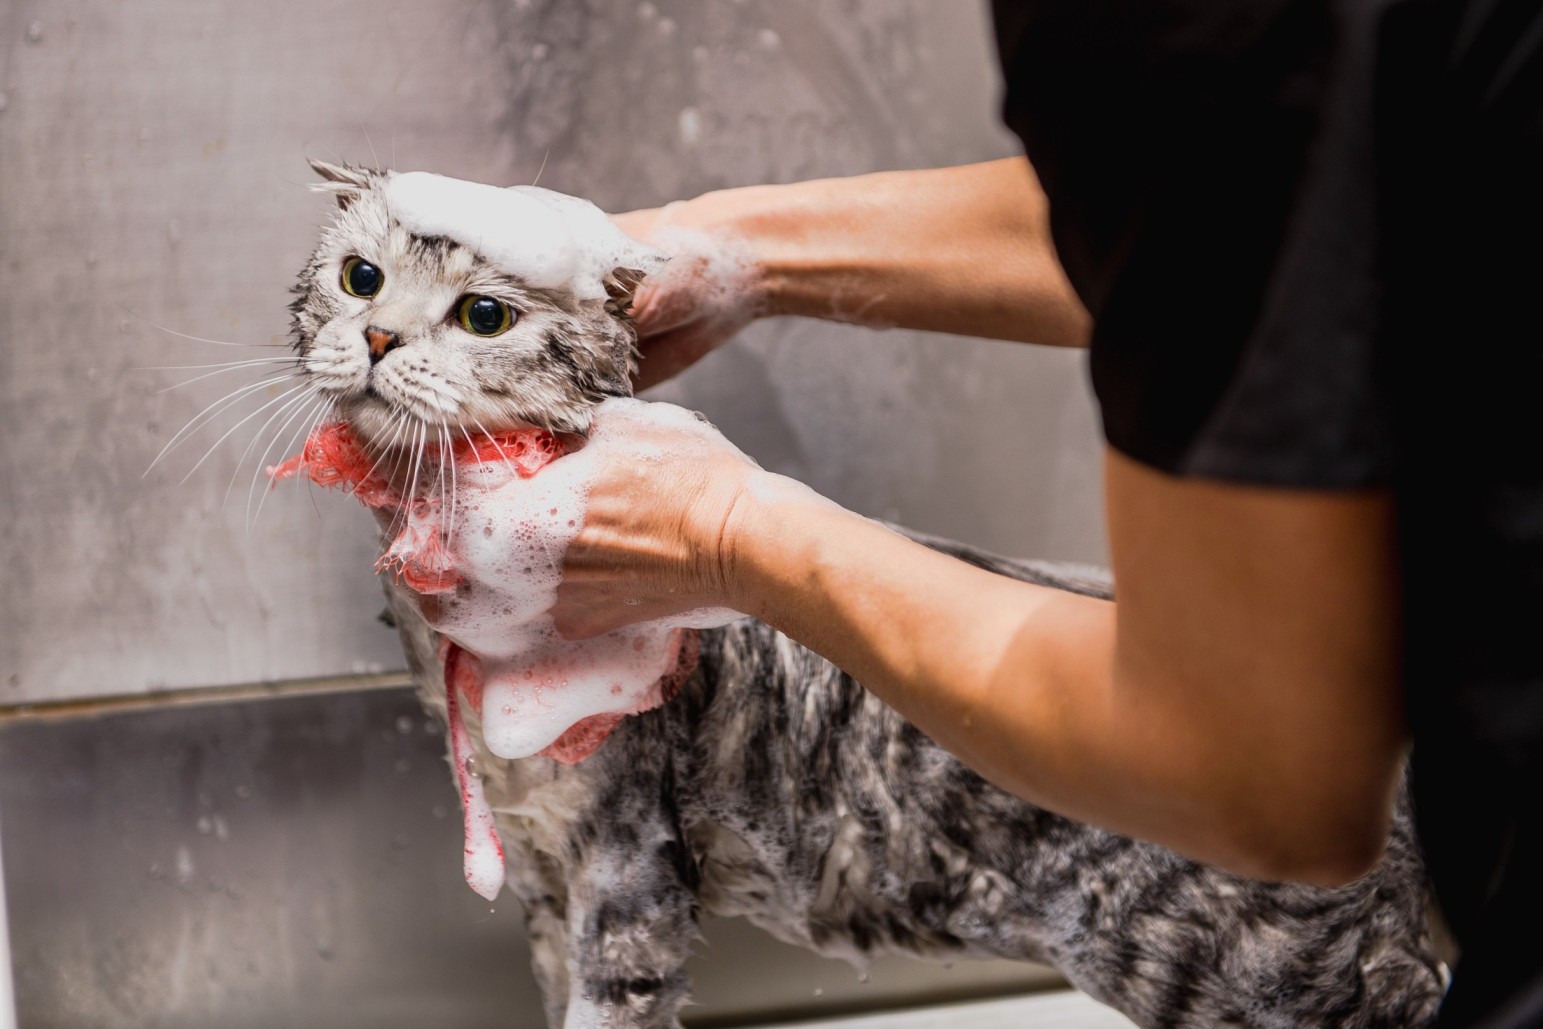 A man shampooing a cat